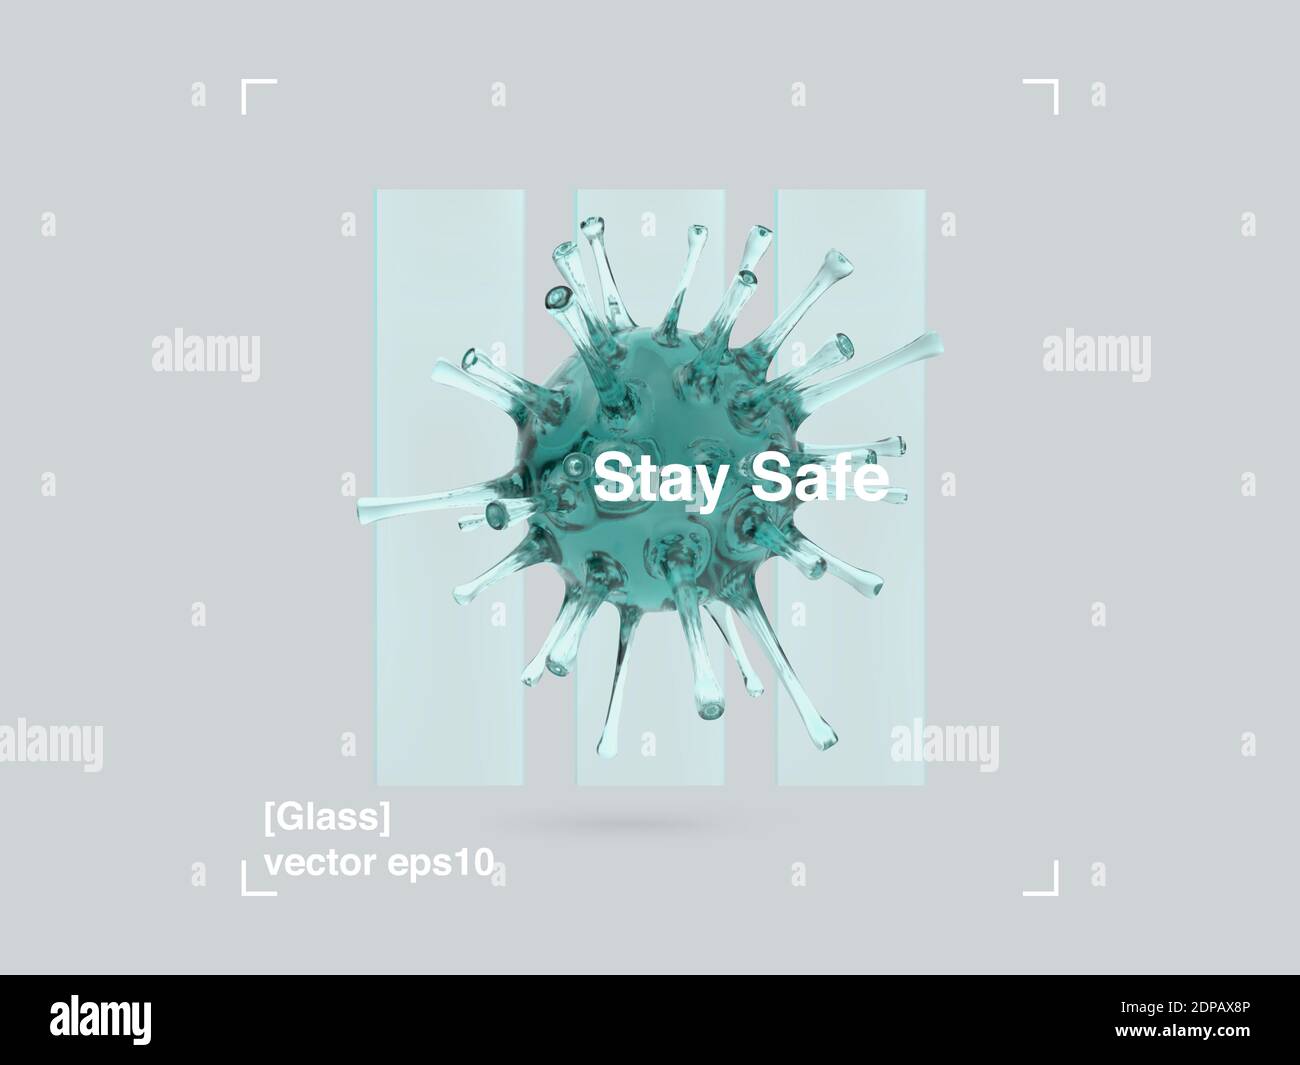 Composizione 3D di pannelli di vetro e virus di vetro in un design moderno stile. COVID-19 Banner Pandemic Stay Safe. Poster di disegno di illustrazione astratta. VEC Illustrazione Vettoriale